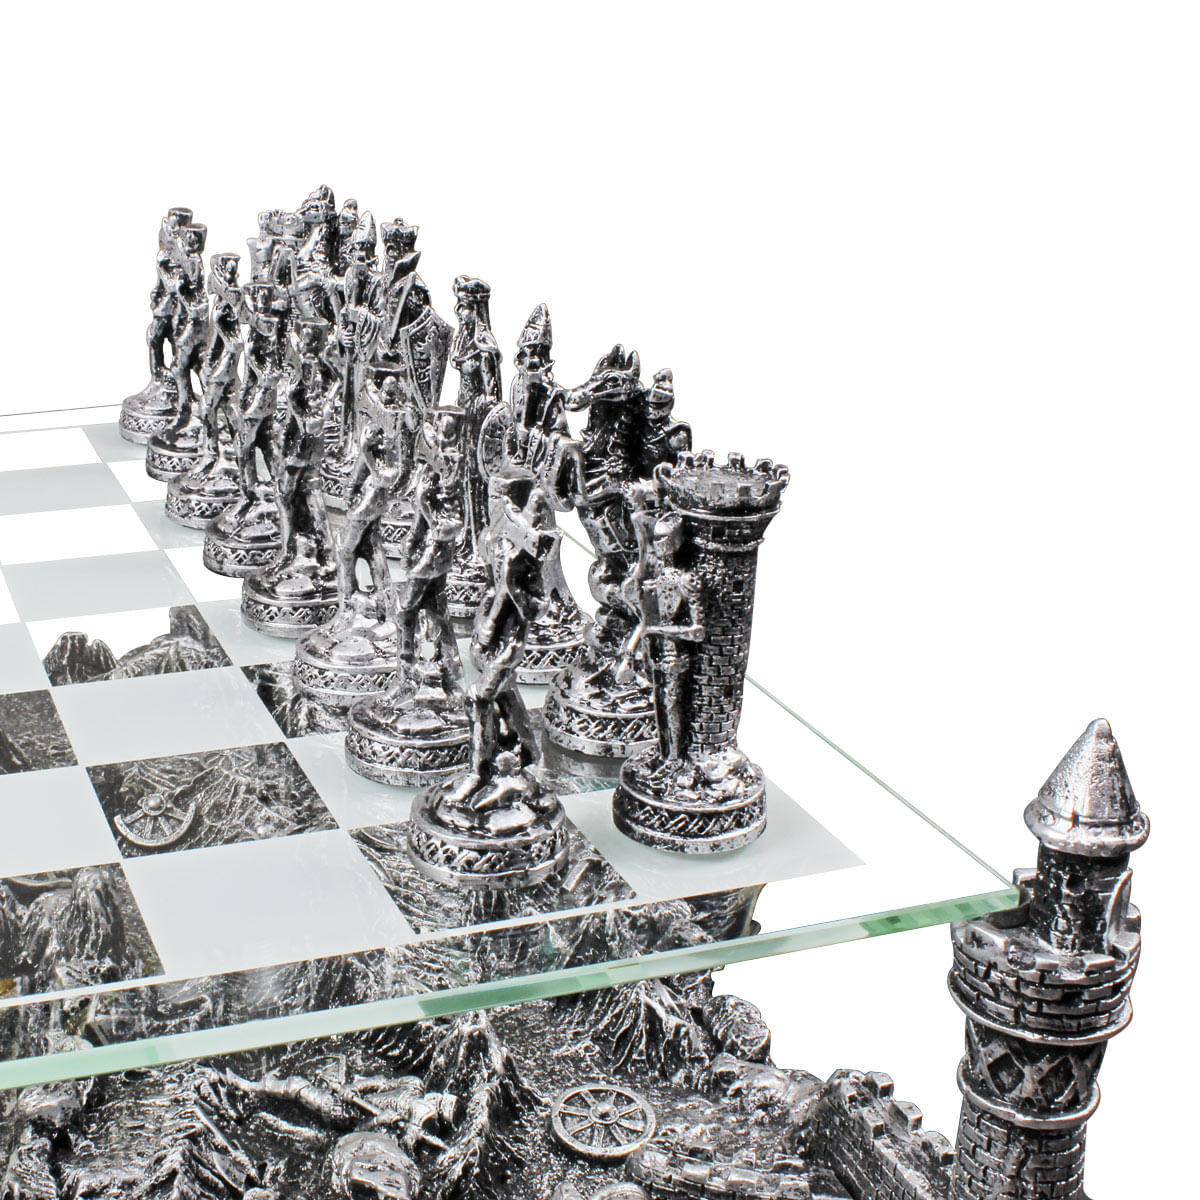 Tabuleiro de Xadrez Luxo Cavaleiros Medievais 3D Verito